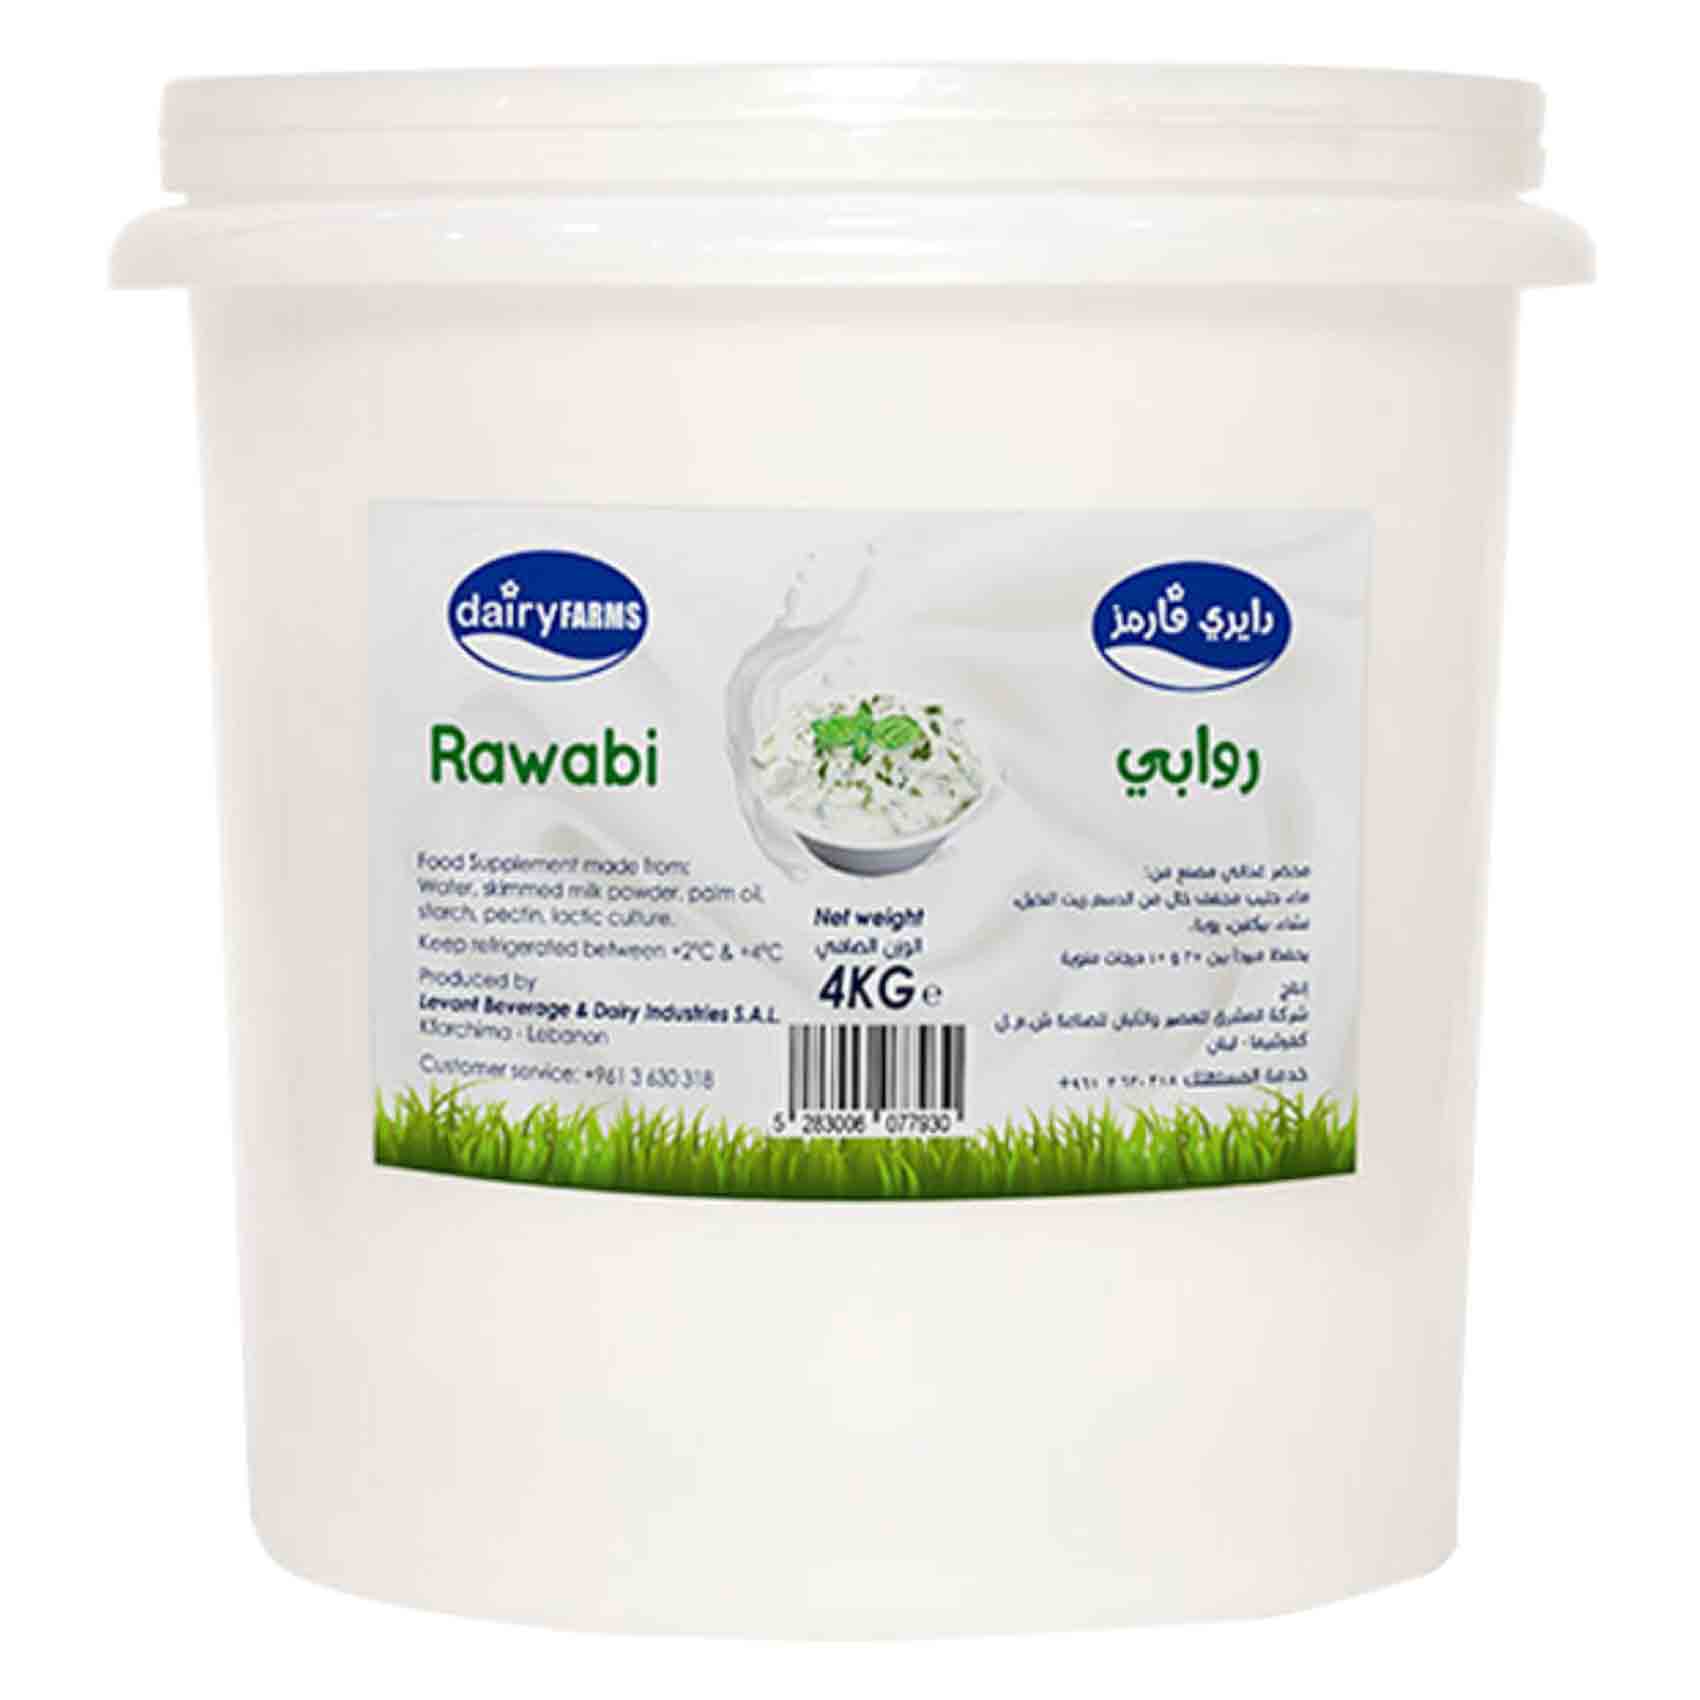 Dairy Farms Rawabi Yoghurt 4Kg